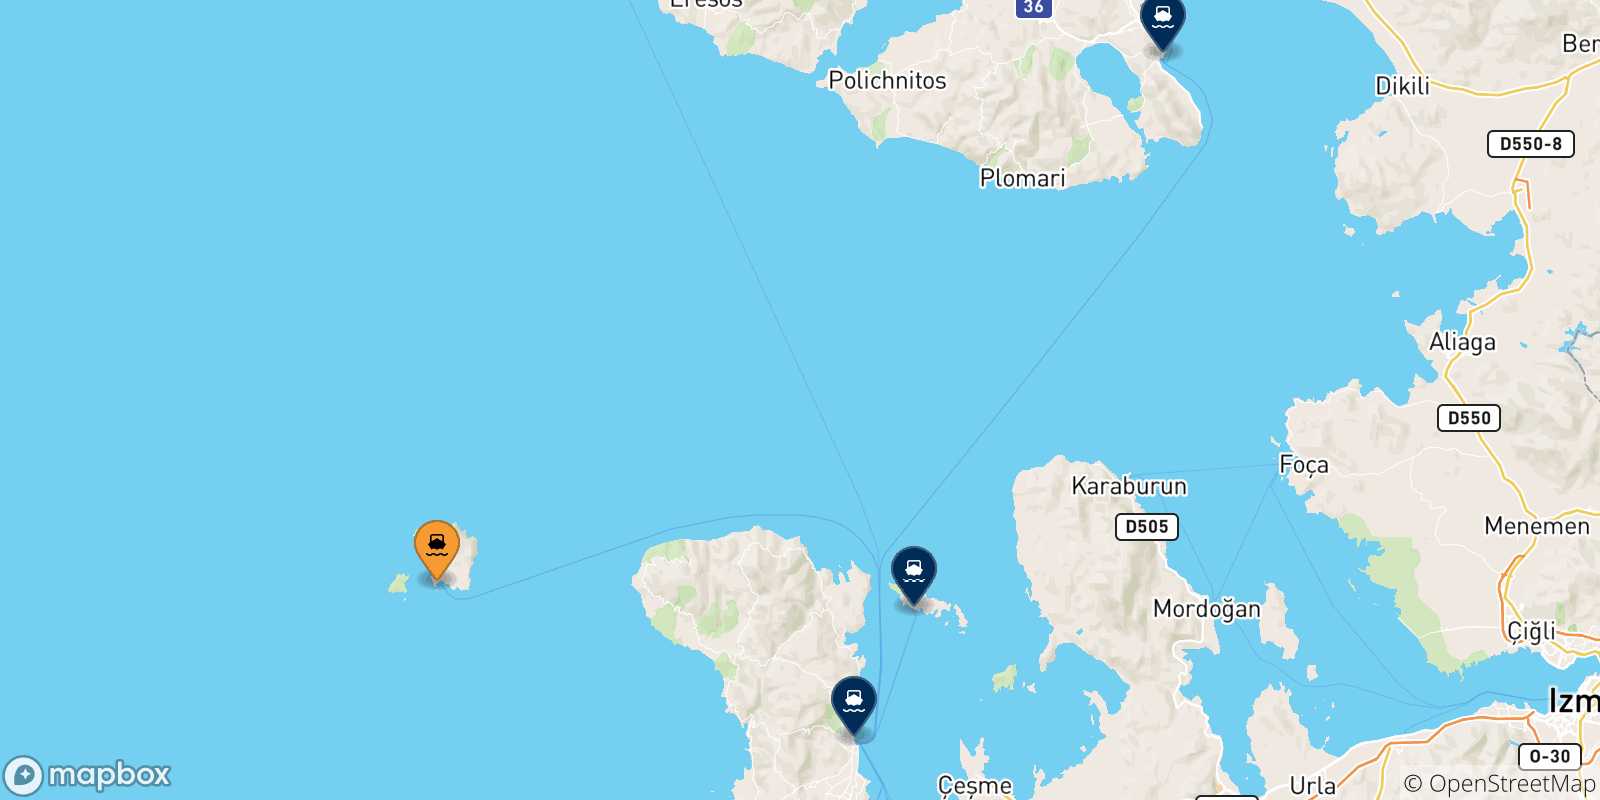 Mappa delle possibili rotte tra Psara e le Isole Egeo Nord Orientale